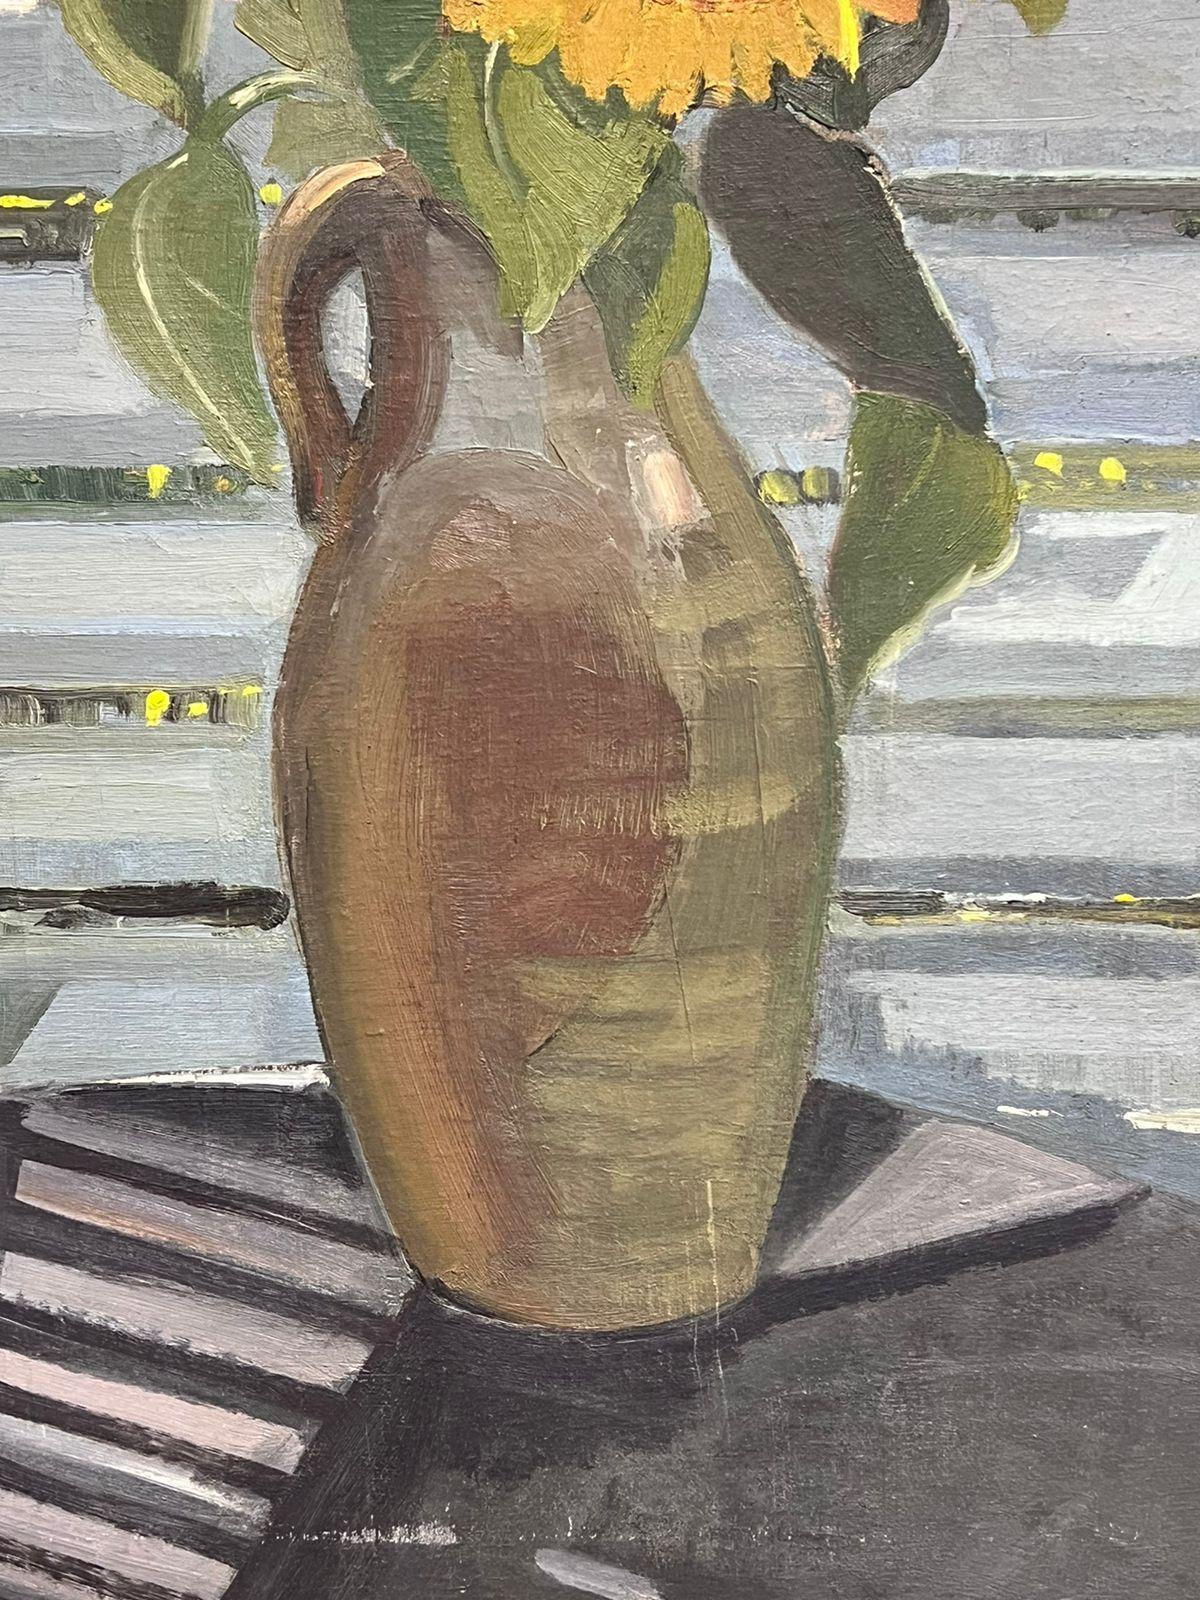 Grand vase français des années 1930, signé Sunflowers in, scène de fenêtre intérieure - Impressionnisme Painting par French School, 1930's